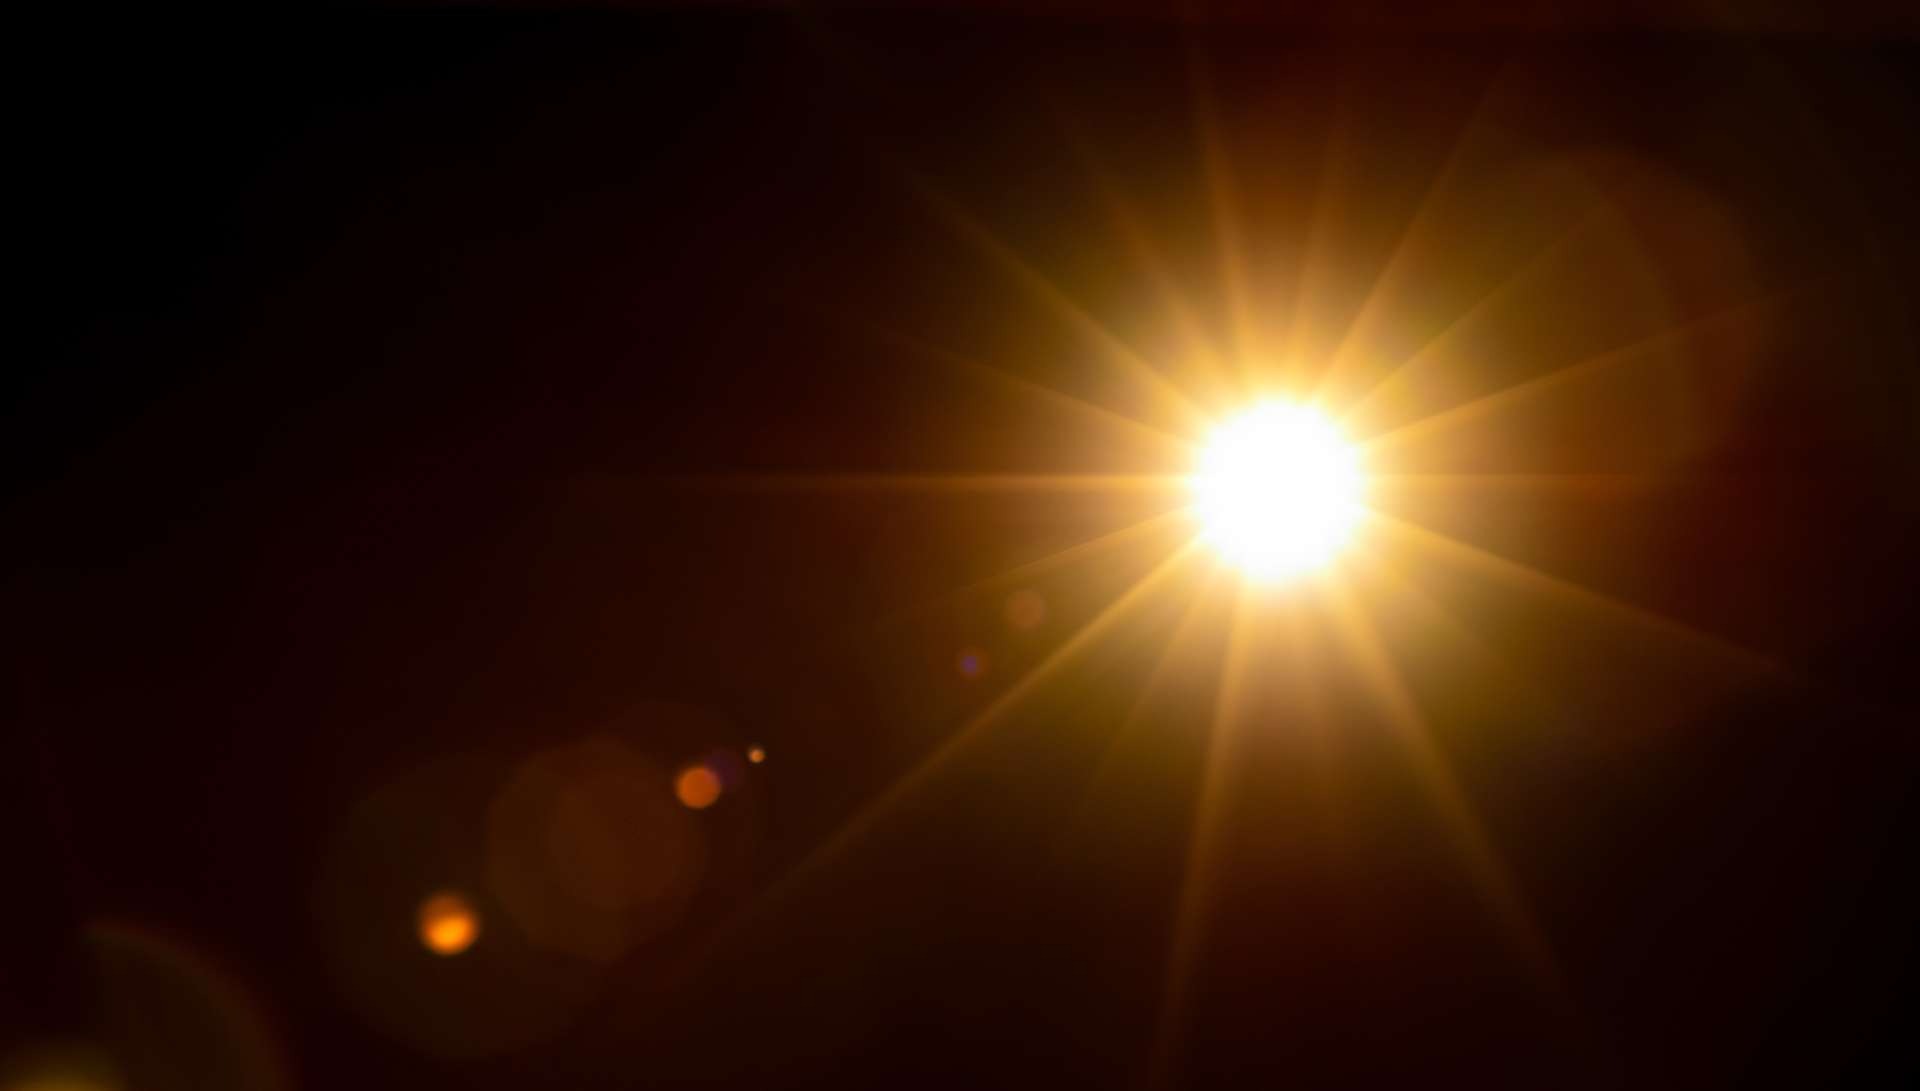 soleil rayon gamma - Die Sonne strahlt hochenergetisches Licht unbekannter Herkunft aus.